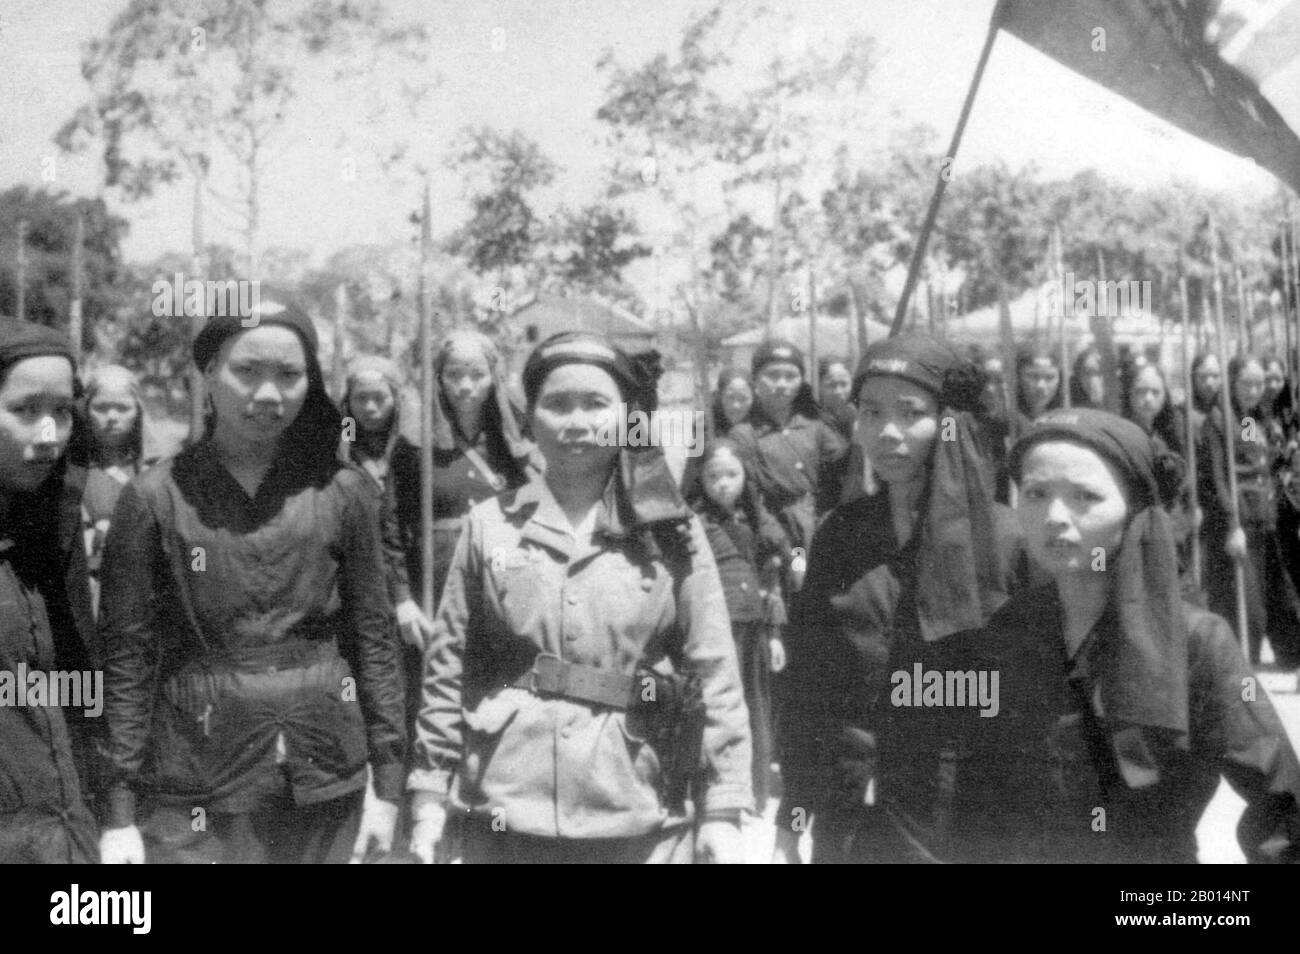 Vietnam: Milice féminine Hoa Hao dans le delta du Mékong, c. 1954. Hoa Hao est une tradition religieuse, basée sur le bouddhisme, fondée en 1939 par Huynh PHY Sy, originaire de la région du delta du Mékong dans le sud du Vietnam. Lorsque les Etats-Unis ont commencé à intervenir au Sud Vietnam, les groupes les plus puissants pour s'occuper des Américains étaient le Cao Dai, le Binh Xuyen et le Hoa Hao, qui avaient formé une petite armée privée sous le général Ba Cụt. O.S. Le colonel Edward Lansdale a utilisé la corruption avec les fonds de la CIA pour diviser le Hoa Hao et en 1956 le général Duơng Van Minh a écrasé le Hoa Hao et le général Ba Cụt a été capturé et décapité Banque D'Images